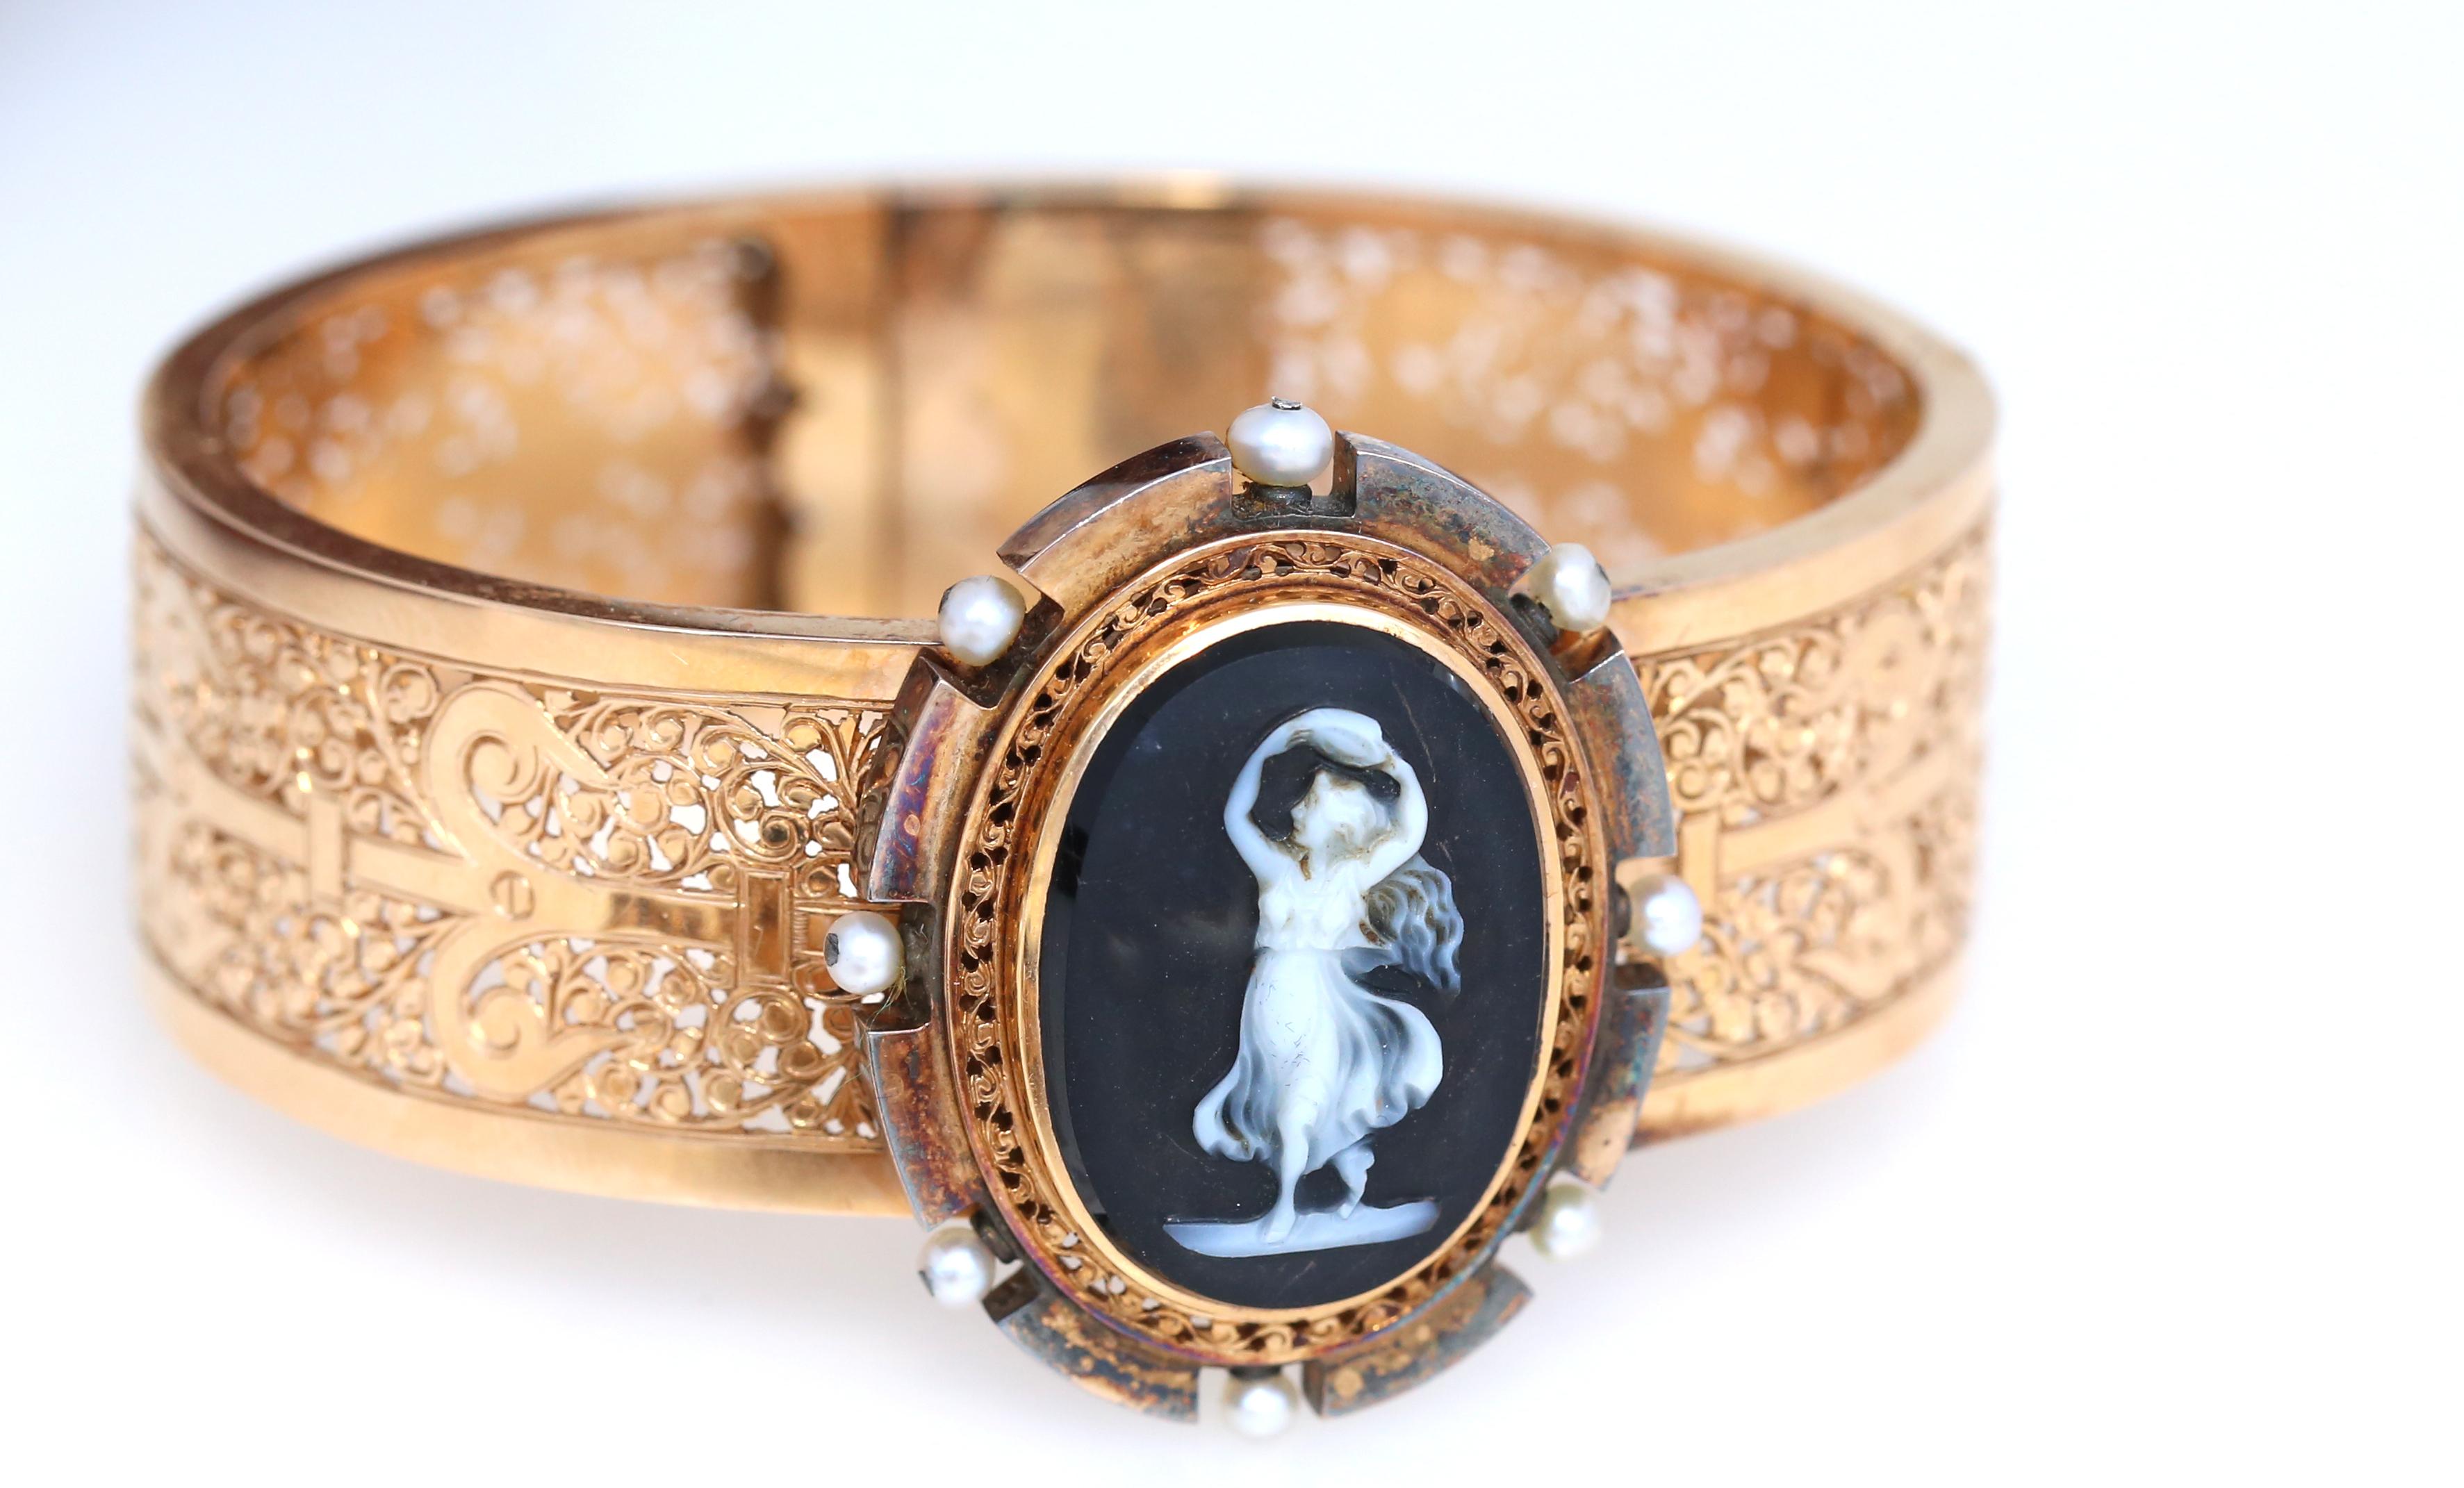 Victorian Cameo Onyx Set Armband Anhänger Ohrringe 18 Karat Gold in es ist original Box.
Viktorianisches Kameen-Set von 1900 in der Originalschachtel. Armband, Ohrringe und Brosche, die auch als Anhänger getragen werden können. Die filigrane Kamee